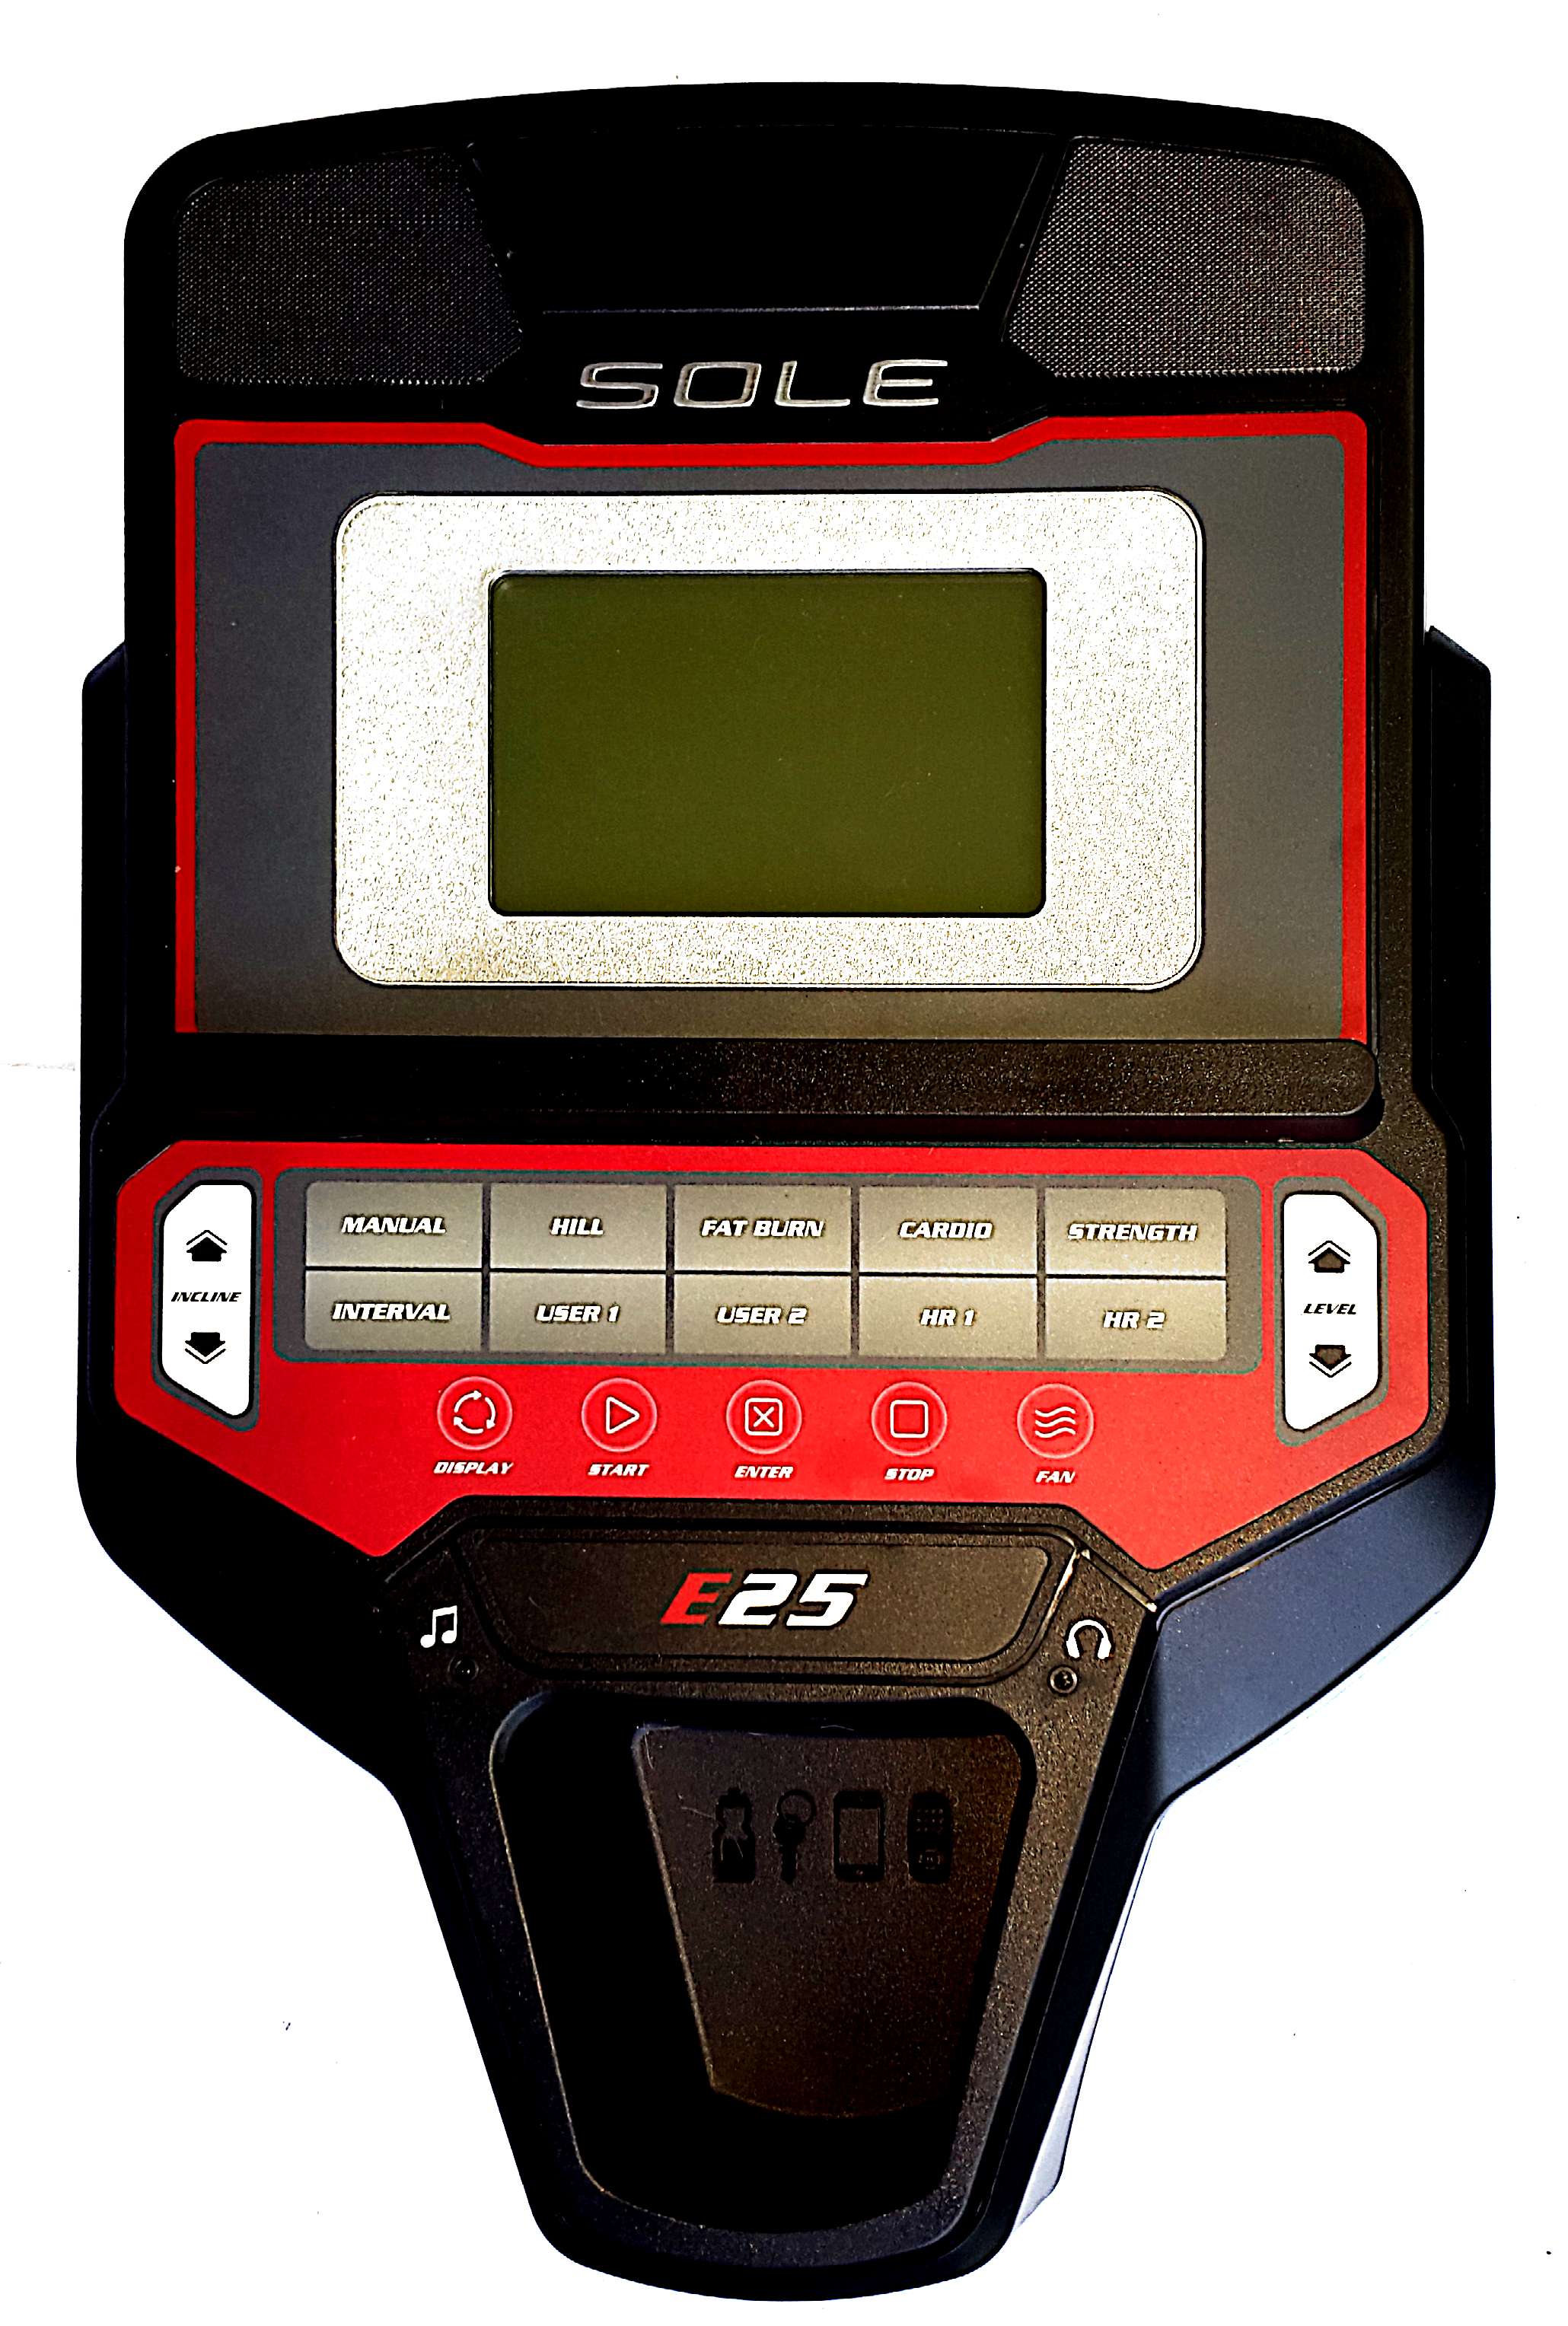 RZ5SE0160-20-console-sole-e25,Sole E25 Elliptical Console,(2016) p/n RZ5SE0160-20